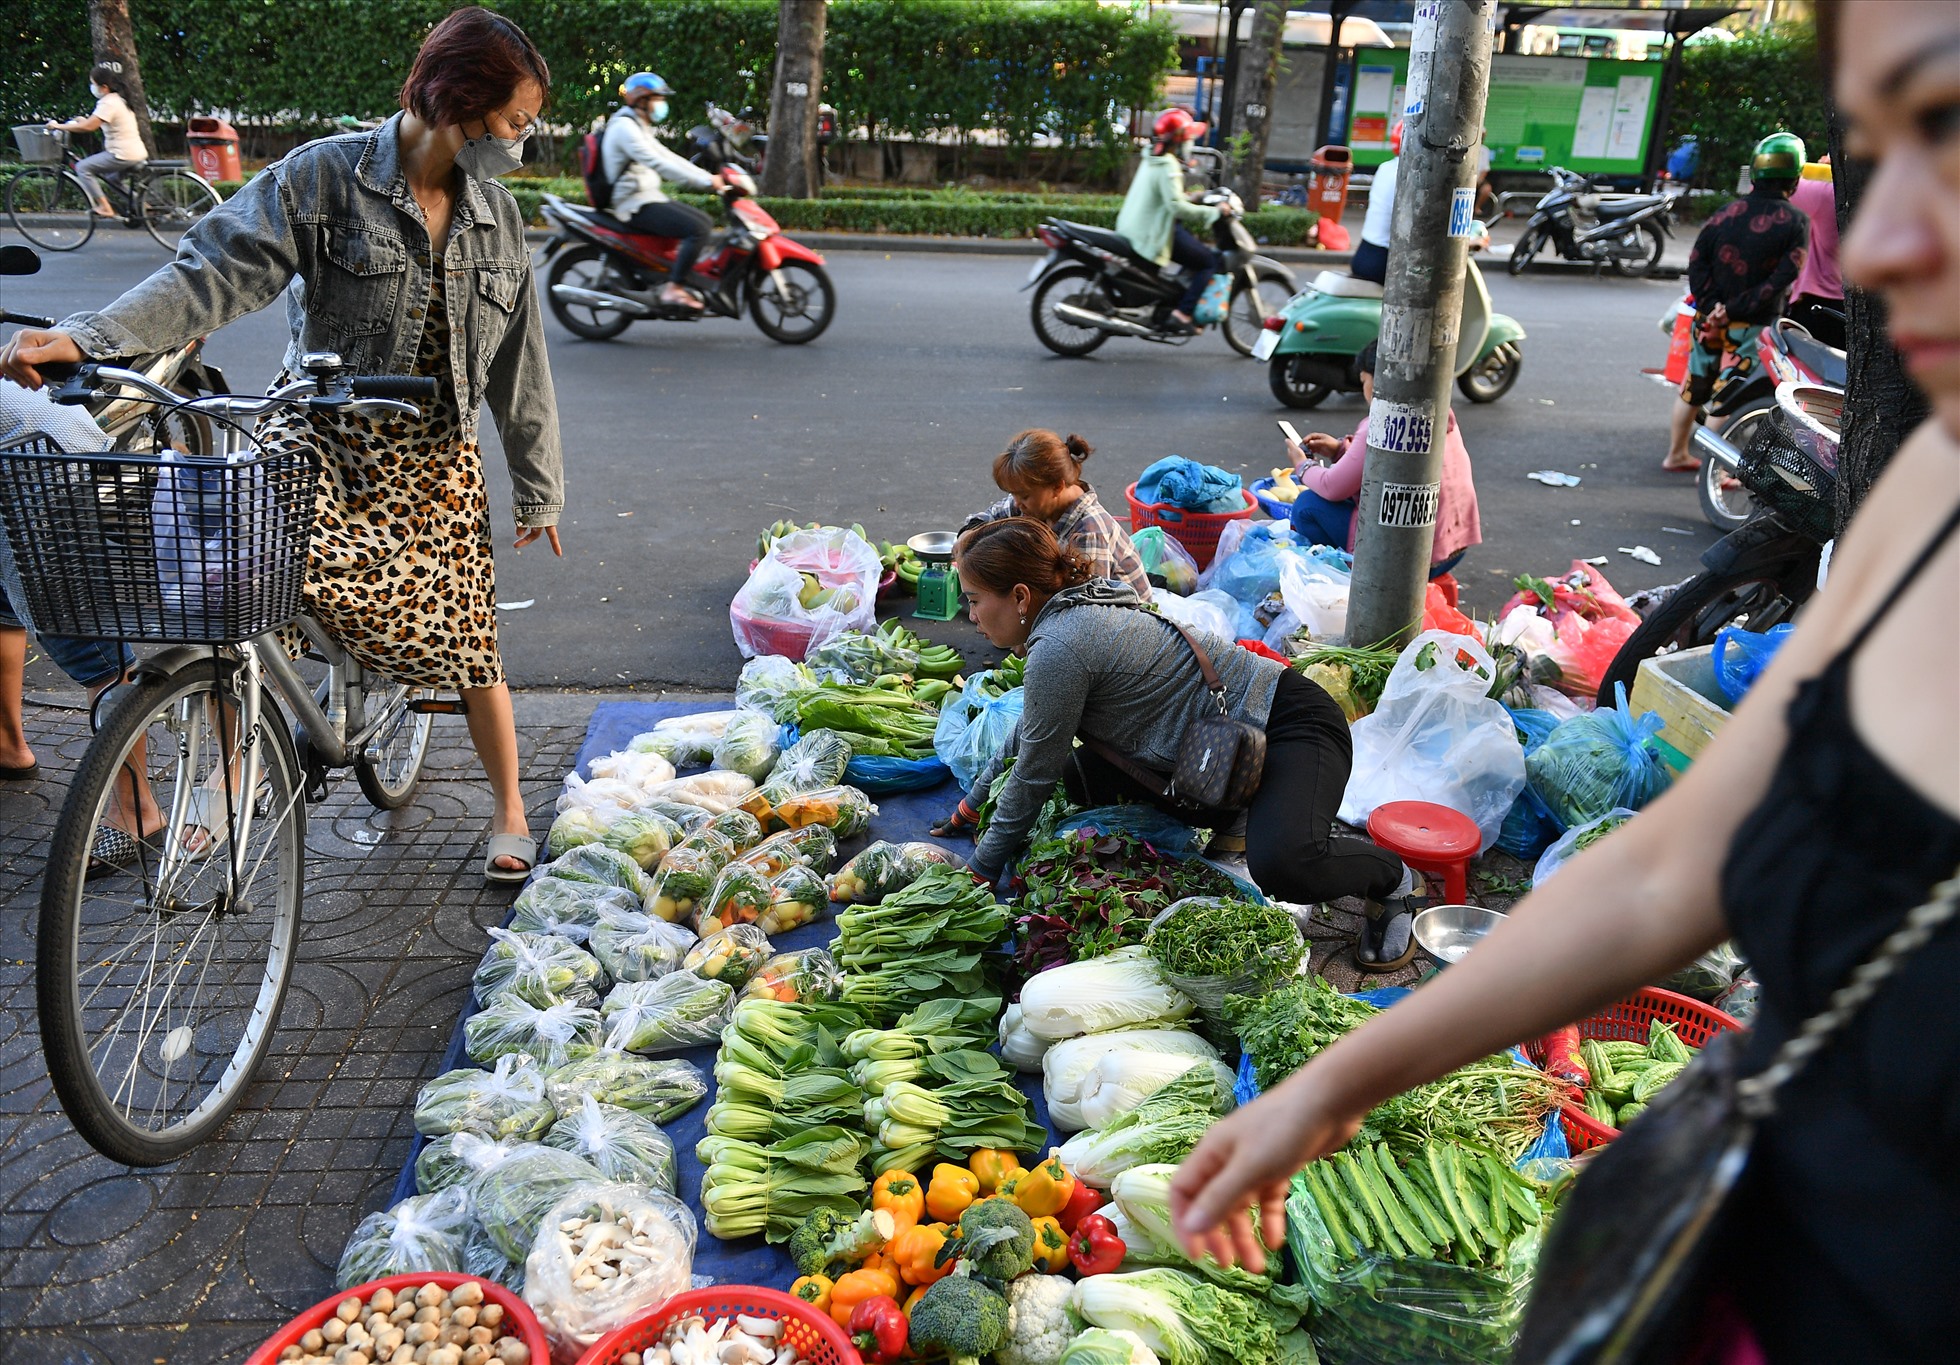 Tranh thủ đi chợ sớm để mua rau tươi giá rẻ.